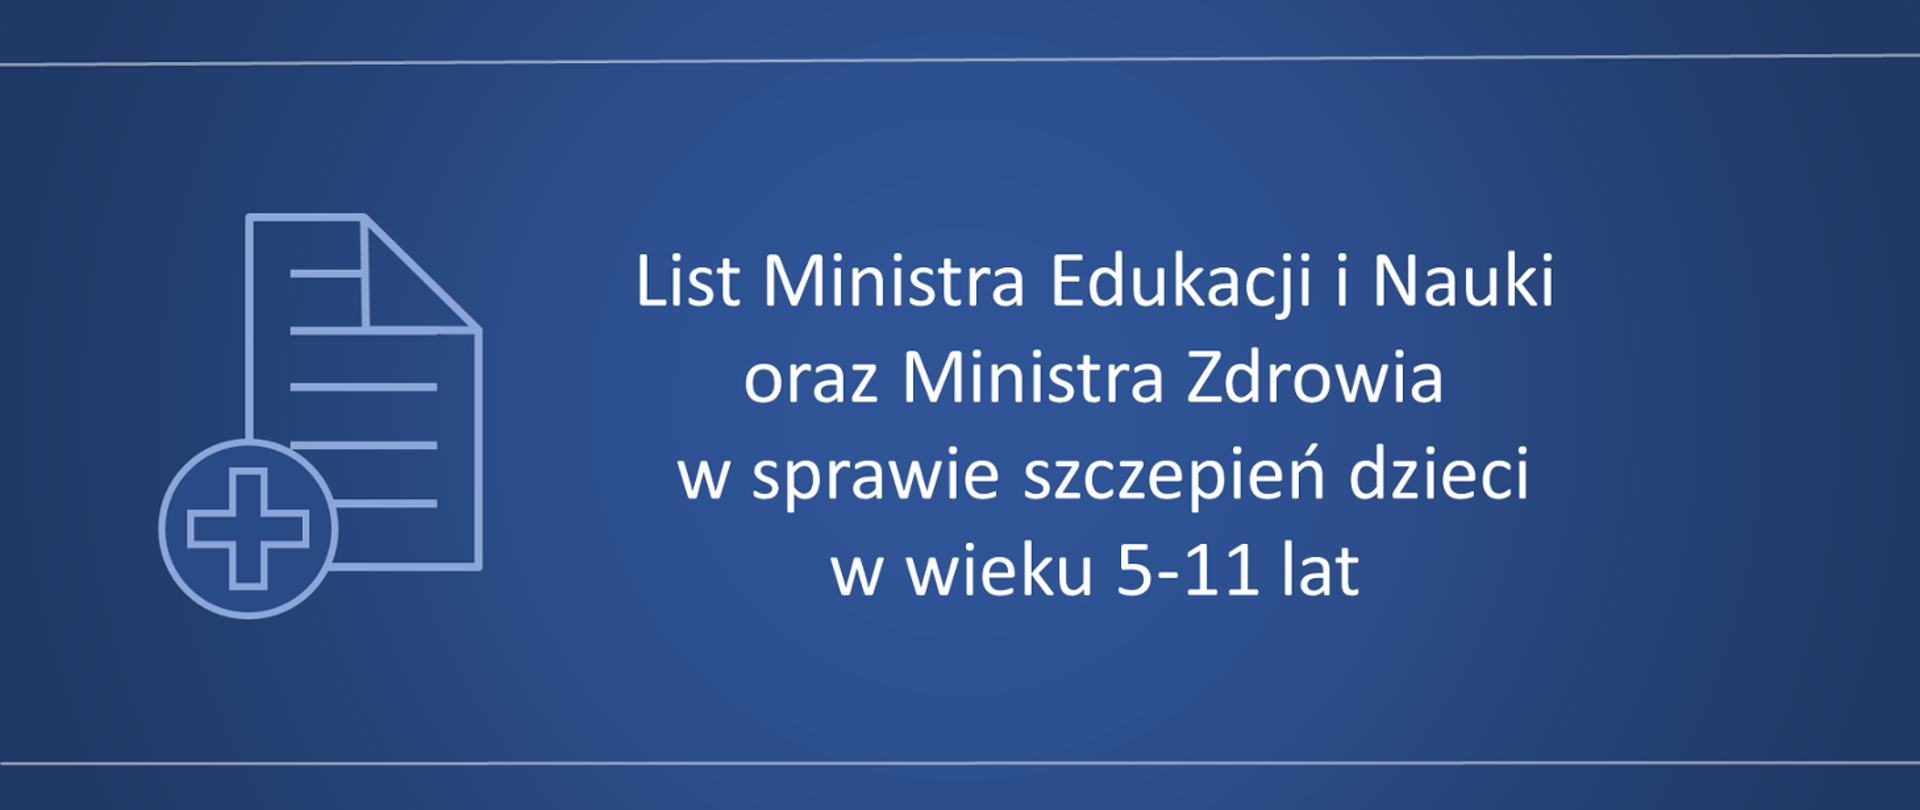 Niebieskie tło, a na nim napis: "List Ministra Edukacji i Nauki oraz Ministra Zdrowia w sprawie szczepień dzieci w wieku 5-11 lat